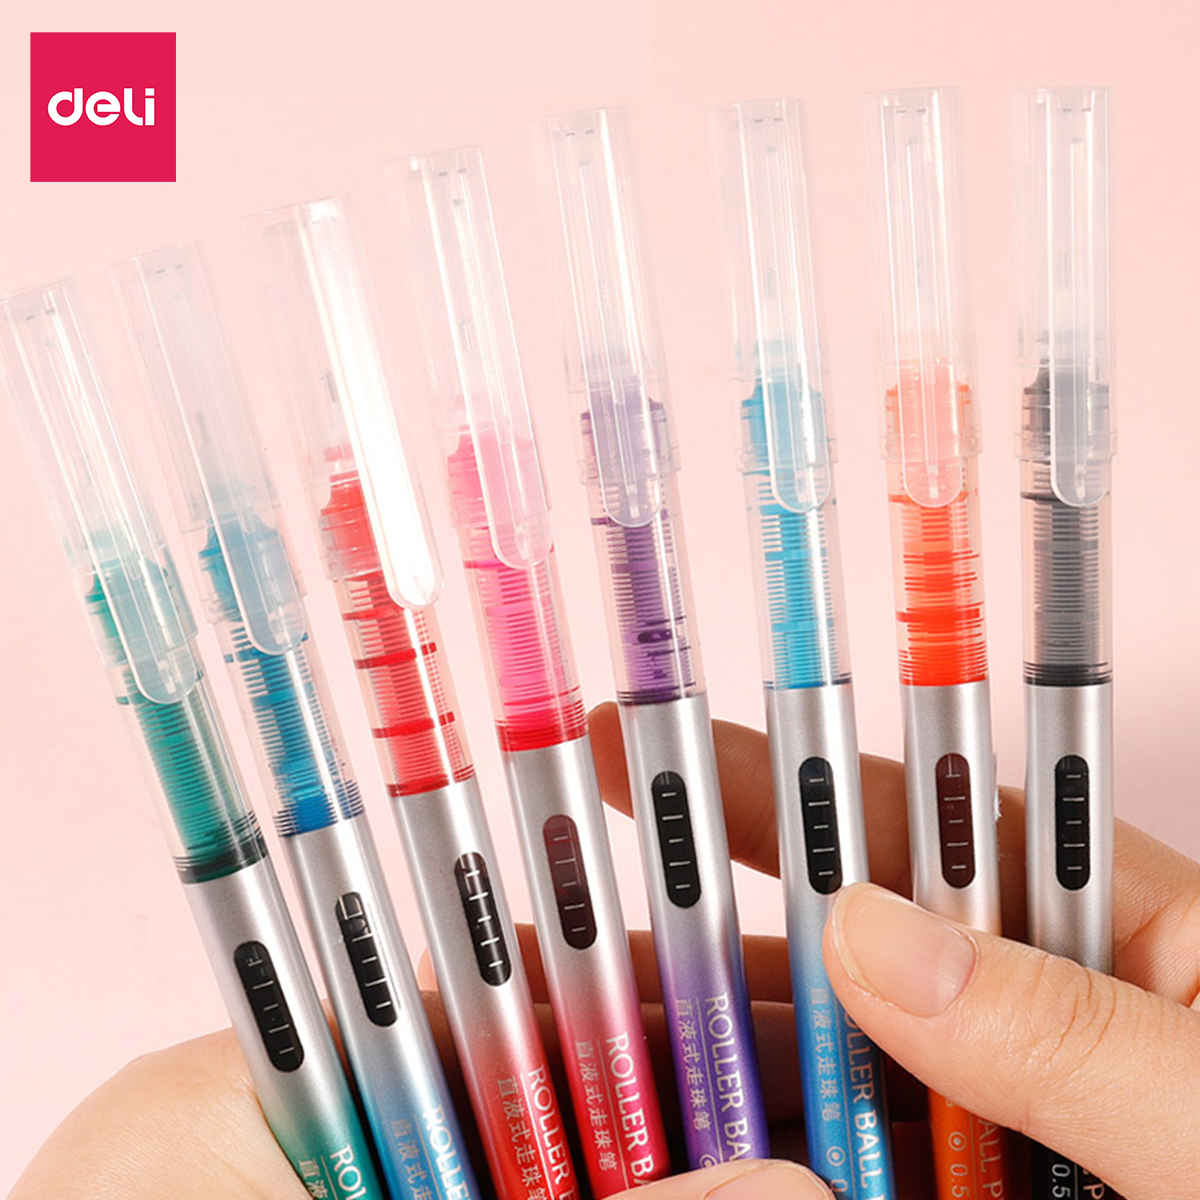  Bút gel nhiều màu Deli - 0.5mm - Mực trơn đều - 8 màu 8 chiếc/Hộp - 1 hộp - S855